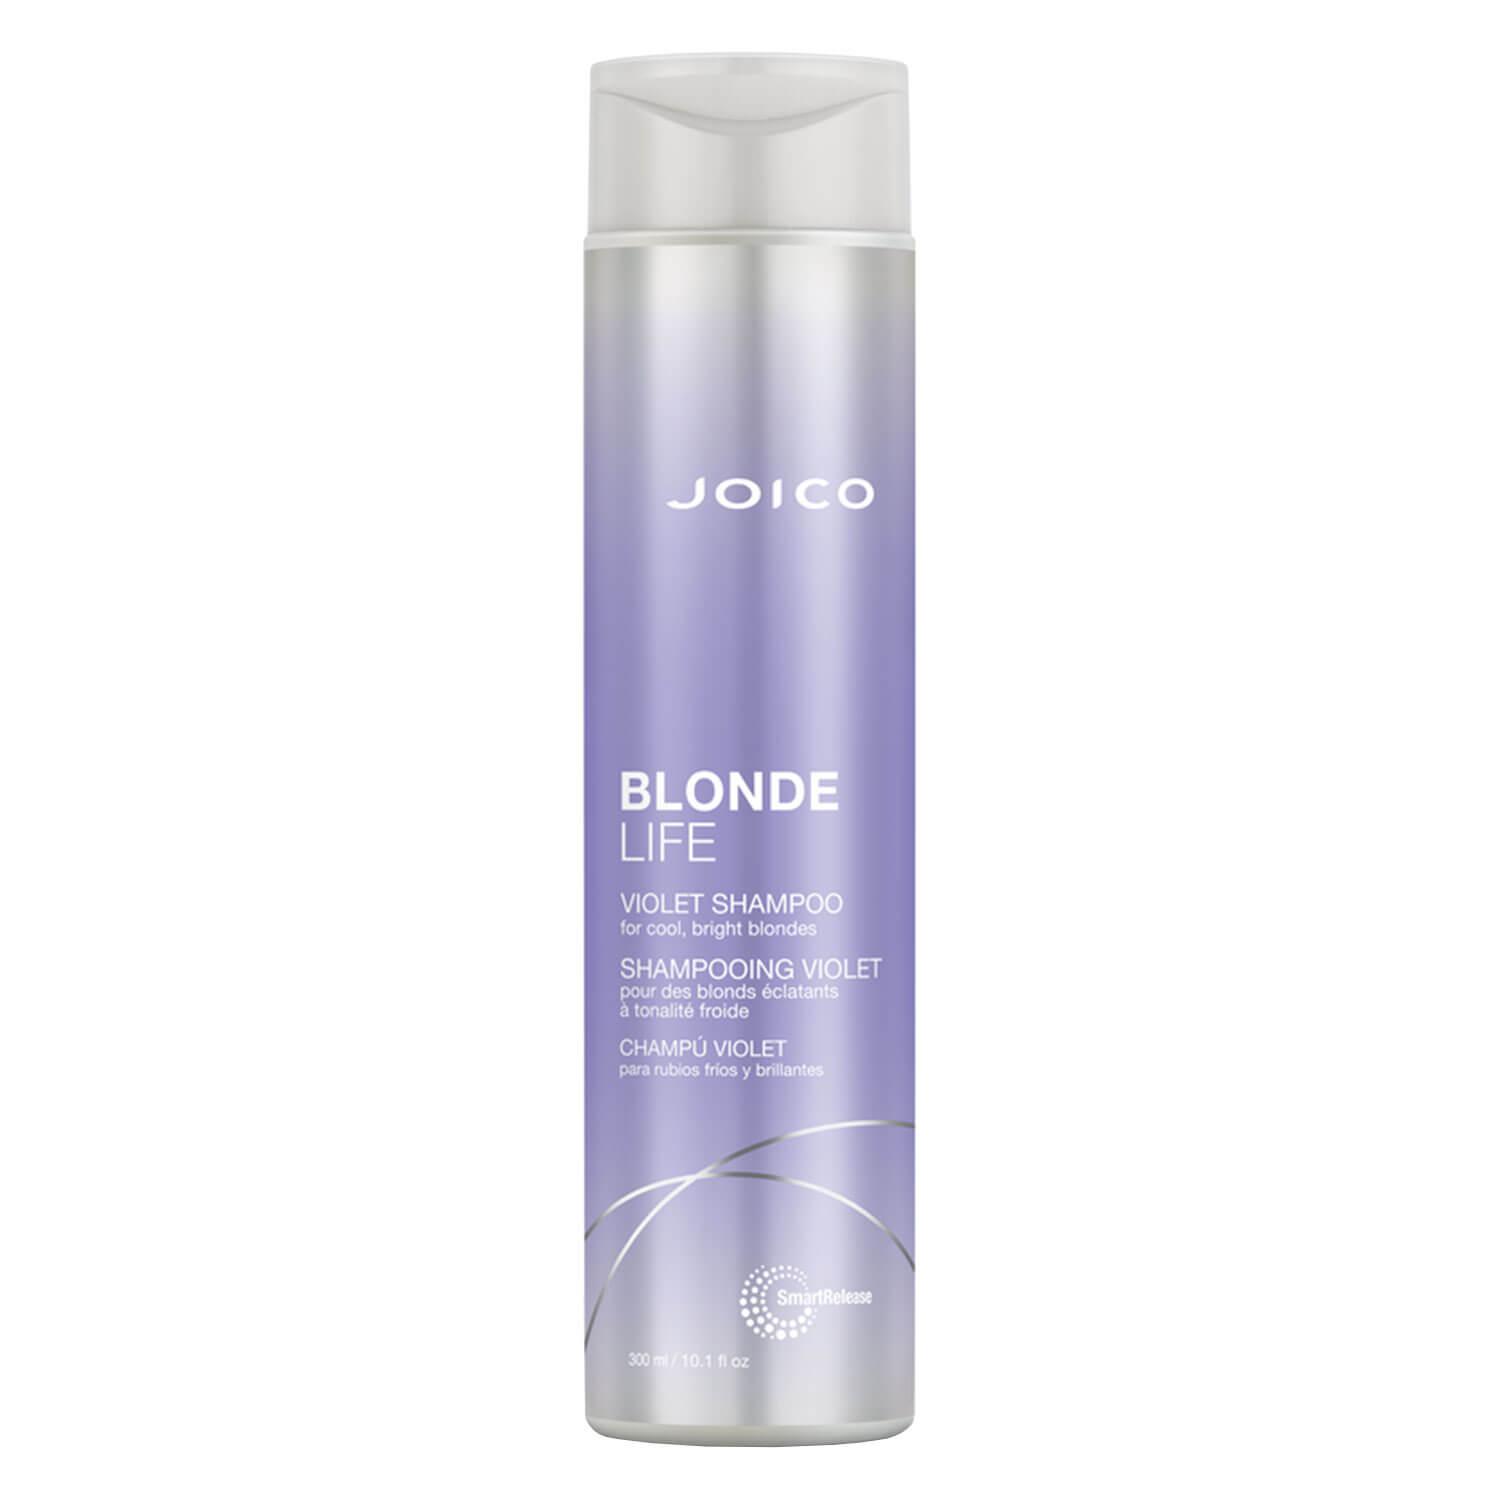 Blonde Life - Violet Shampoo